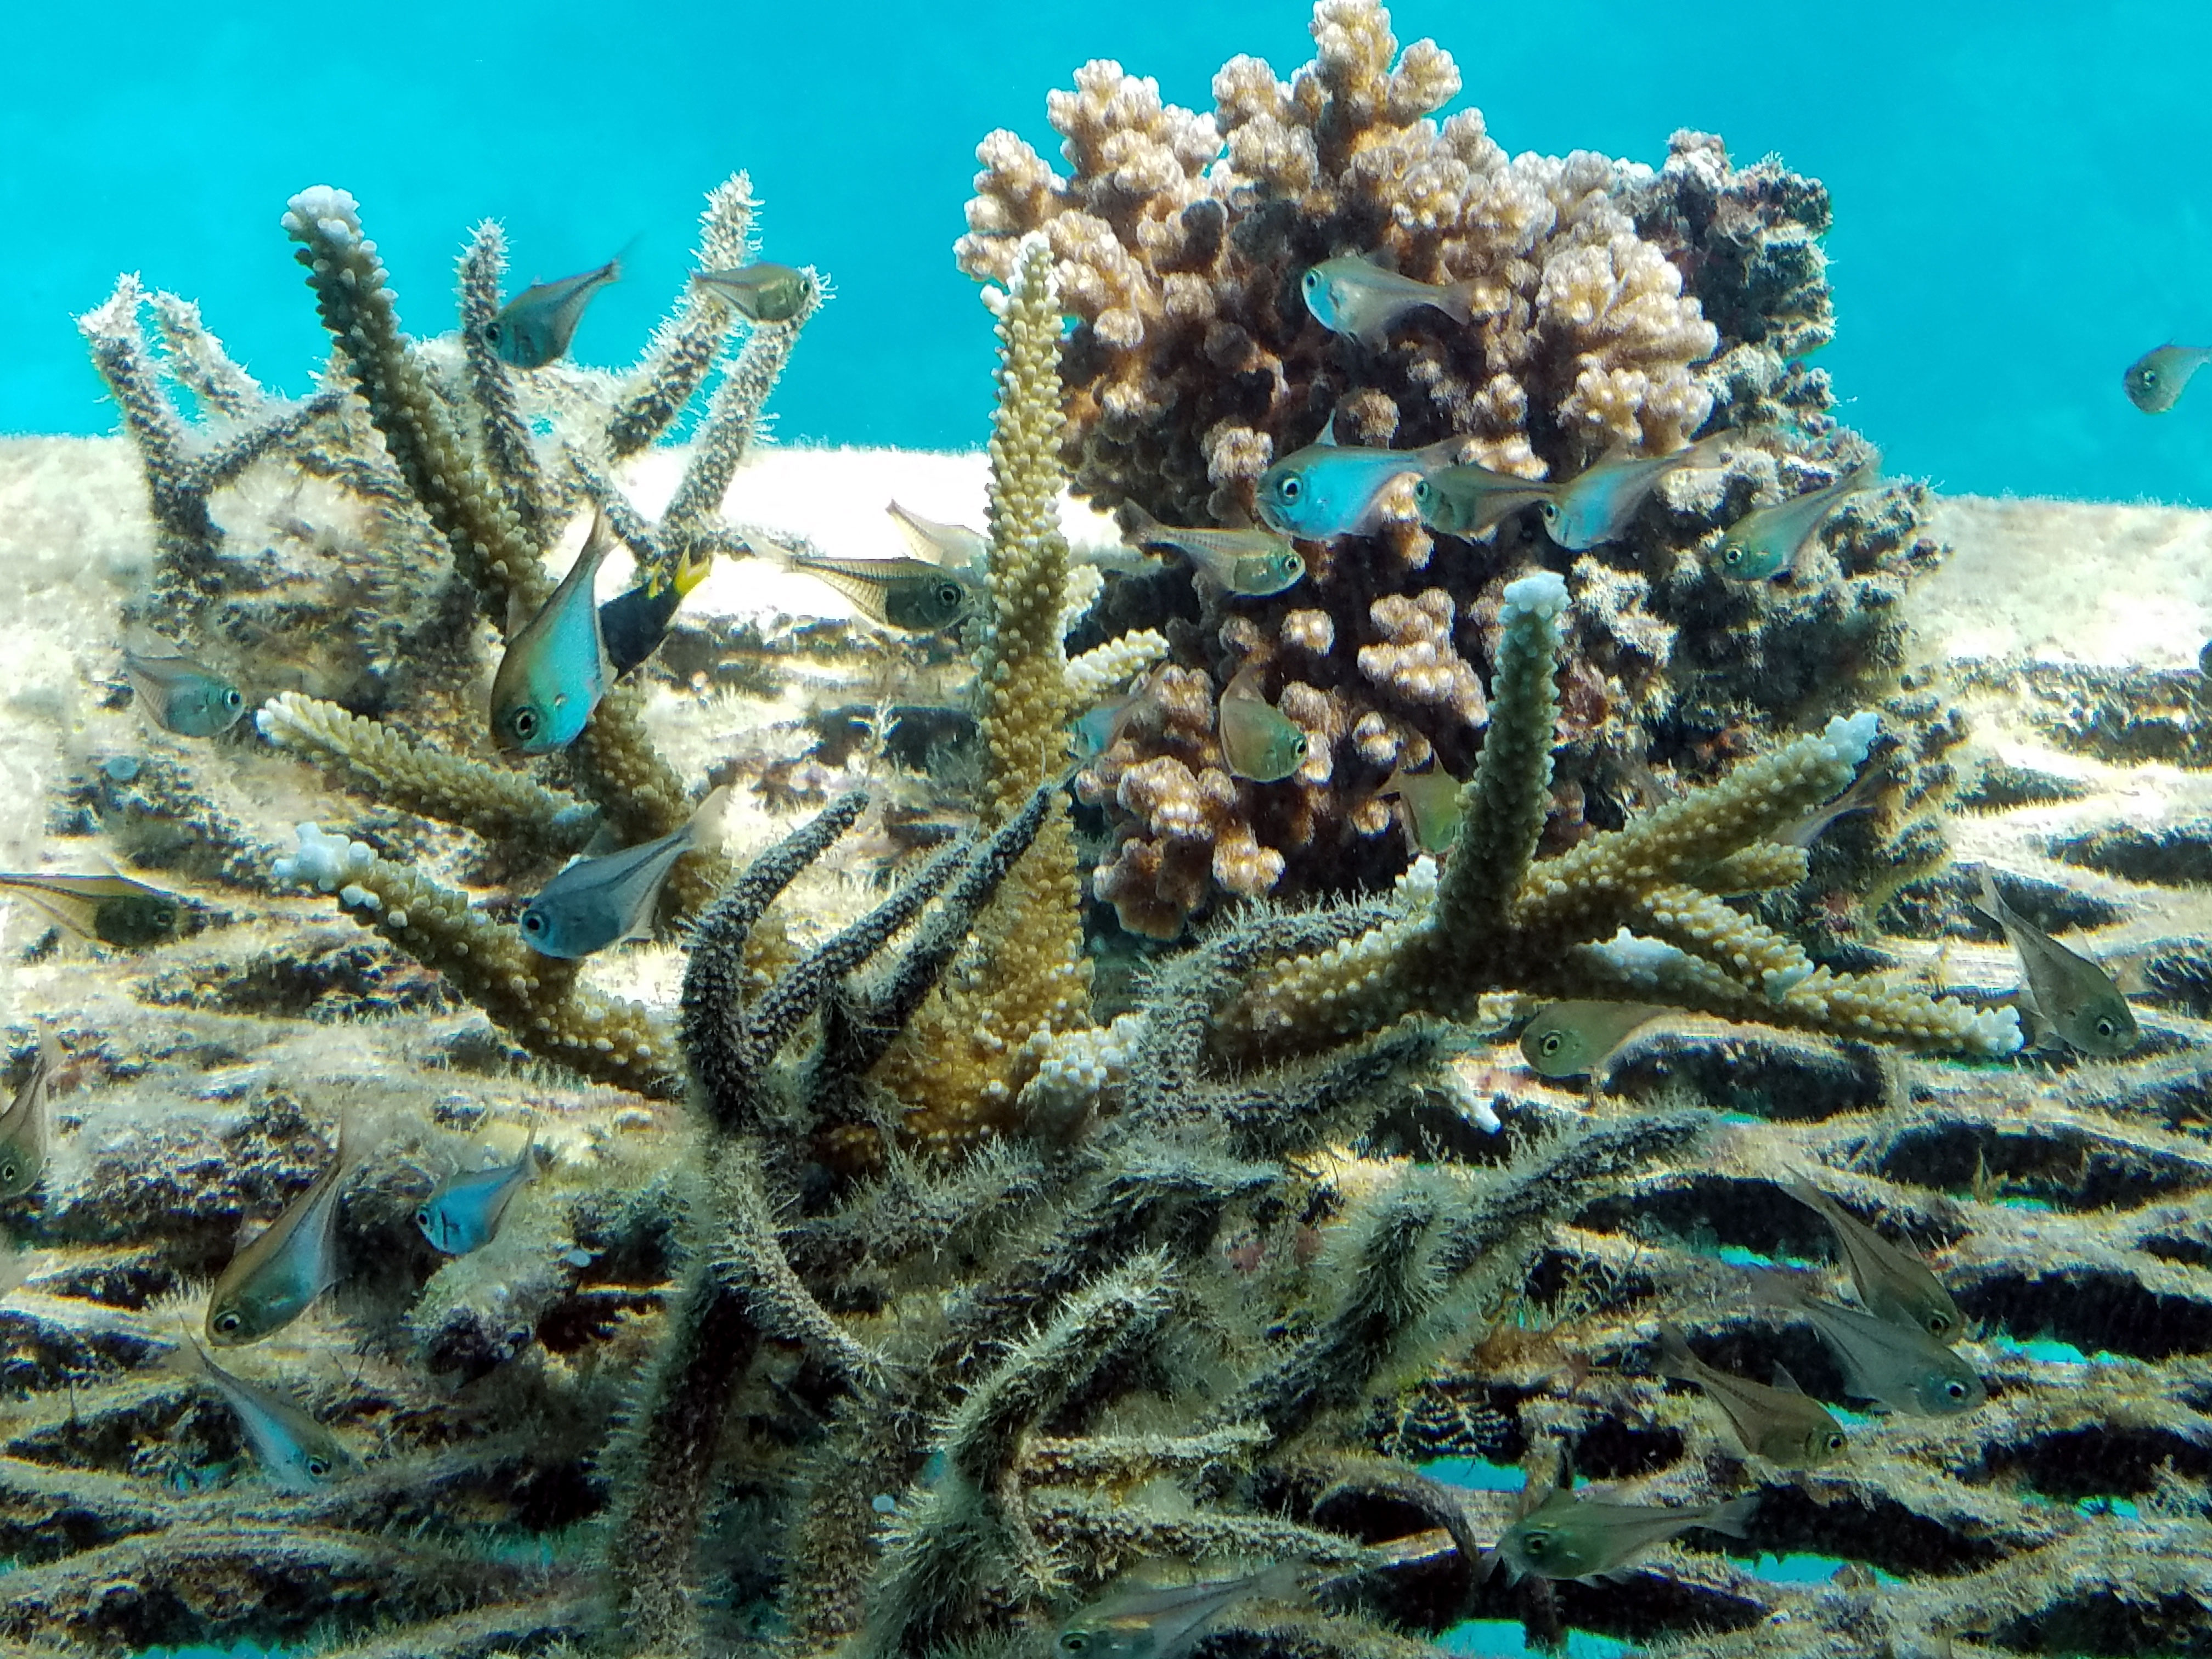 A Nagy-korallzátony 91 százalékát megtámadta a korallfehéredés